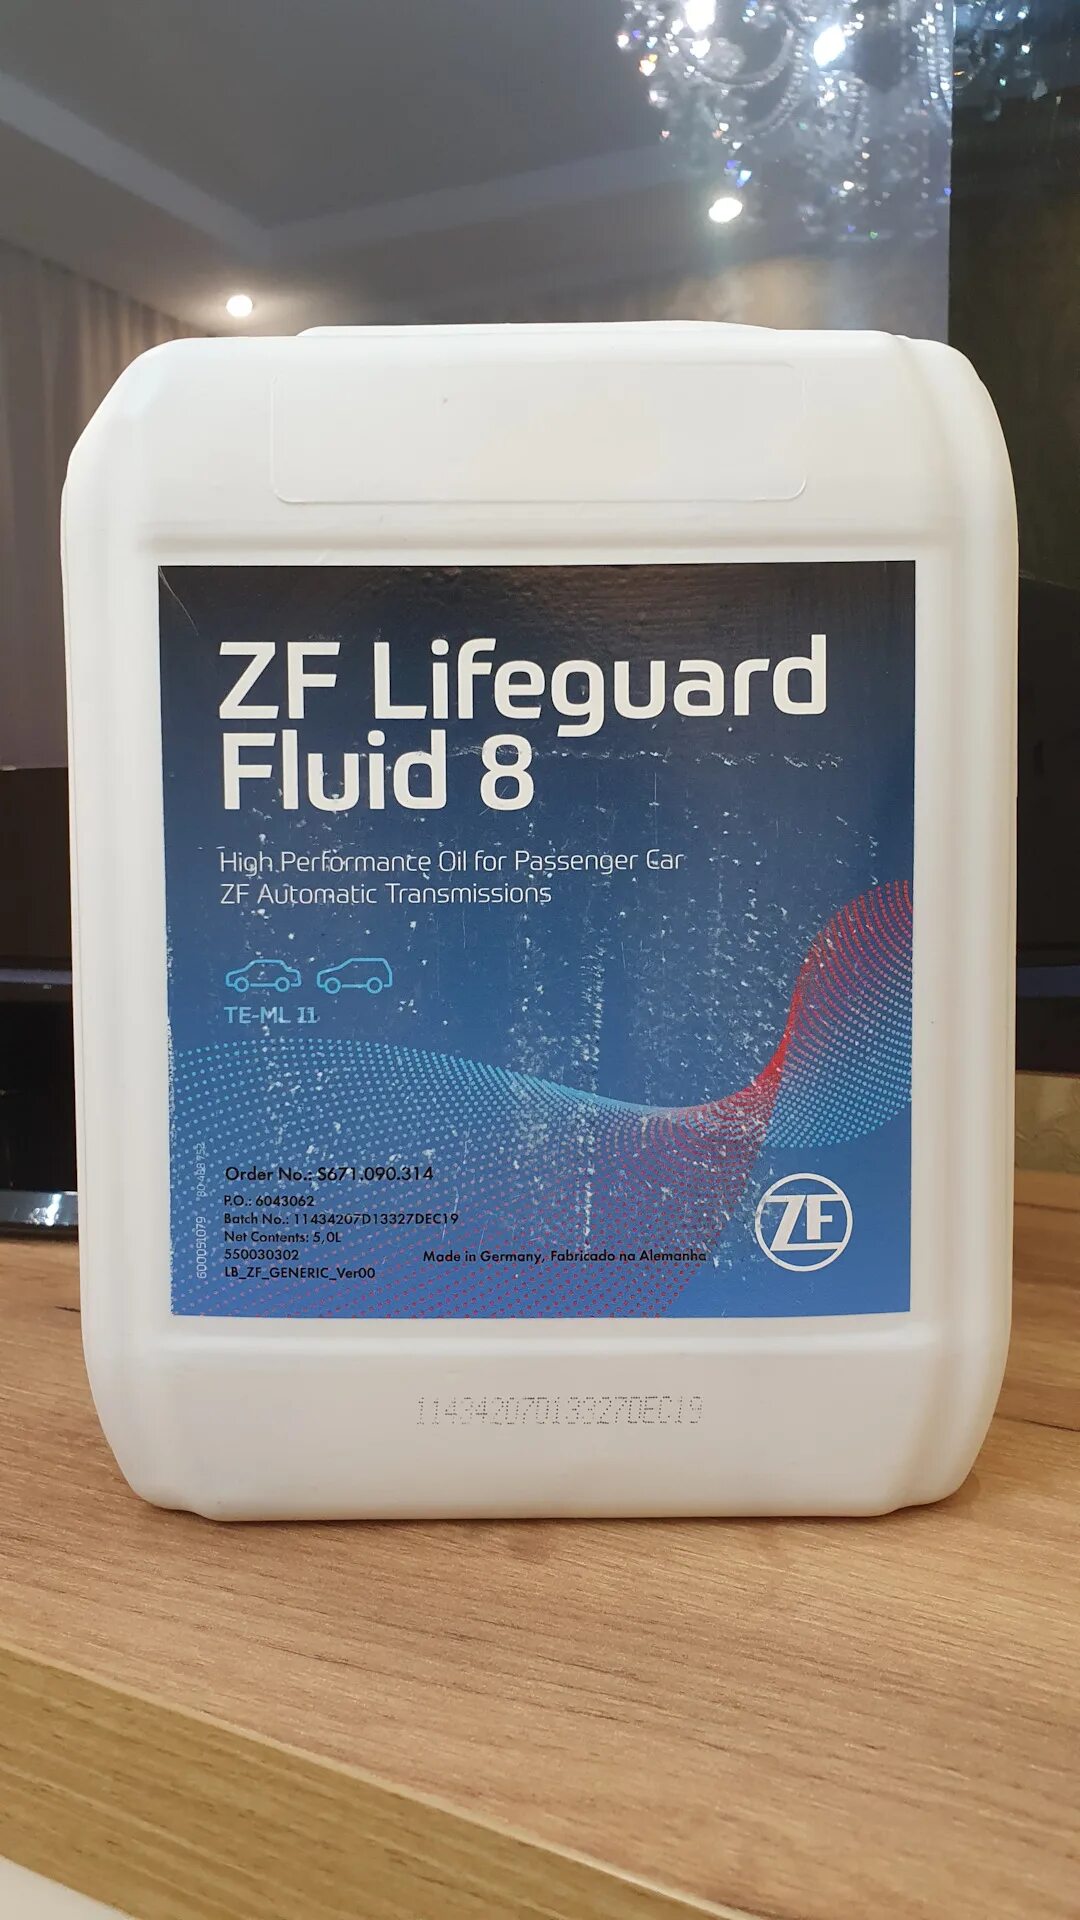 ZF Lifeguard Fluid 8hp. ZF Lifeguard Fluid 8. ZF LIFEGUARDFLUID 8 артикул 5 литров. Масло ZF LIFEGUARDFLUID 8.